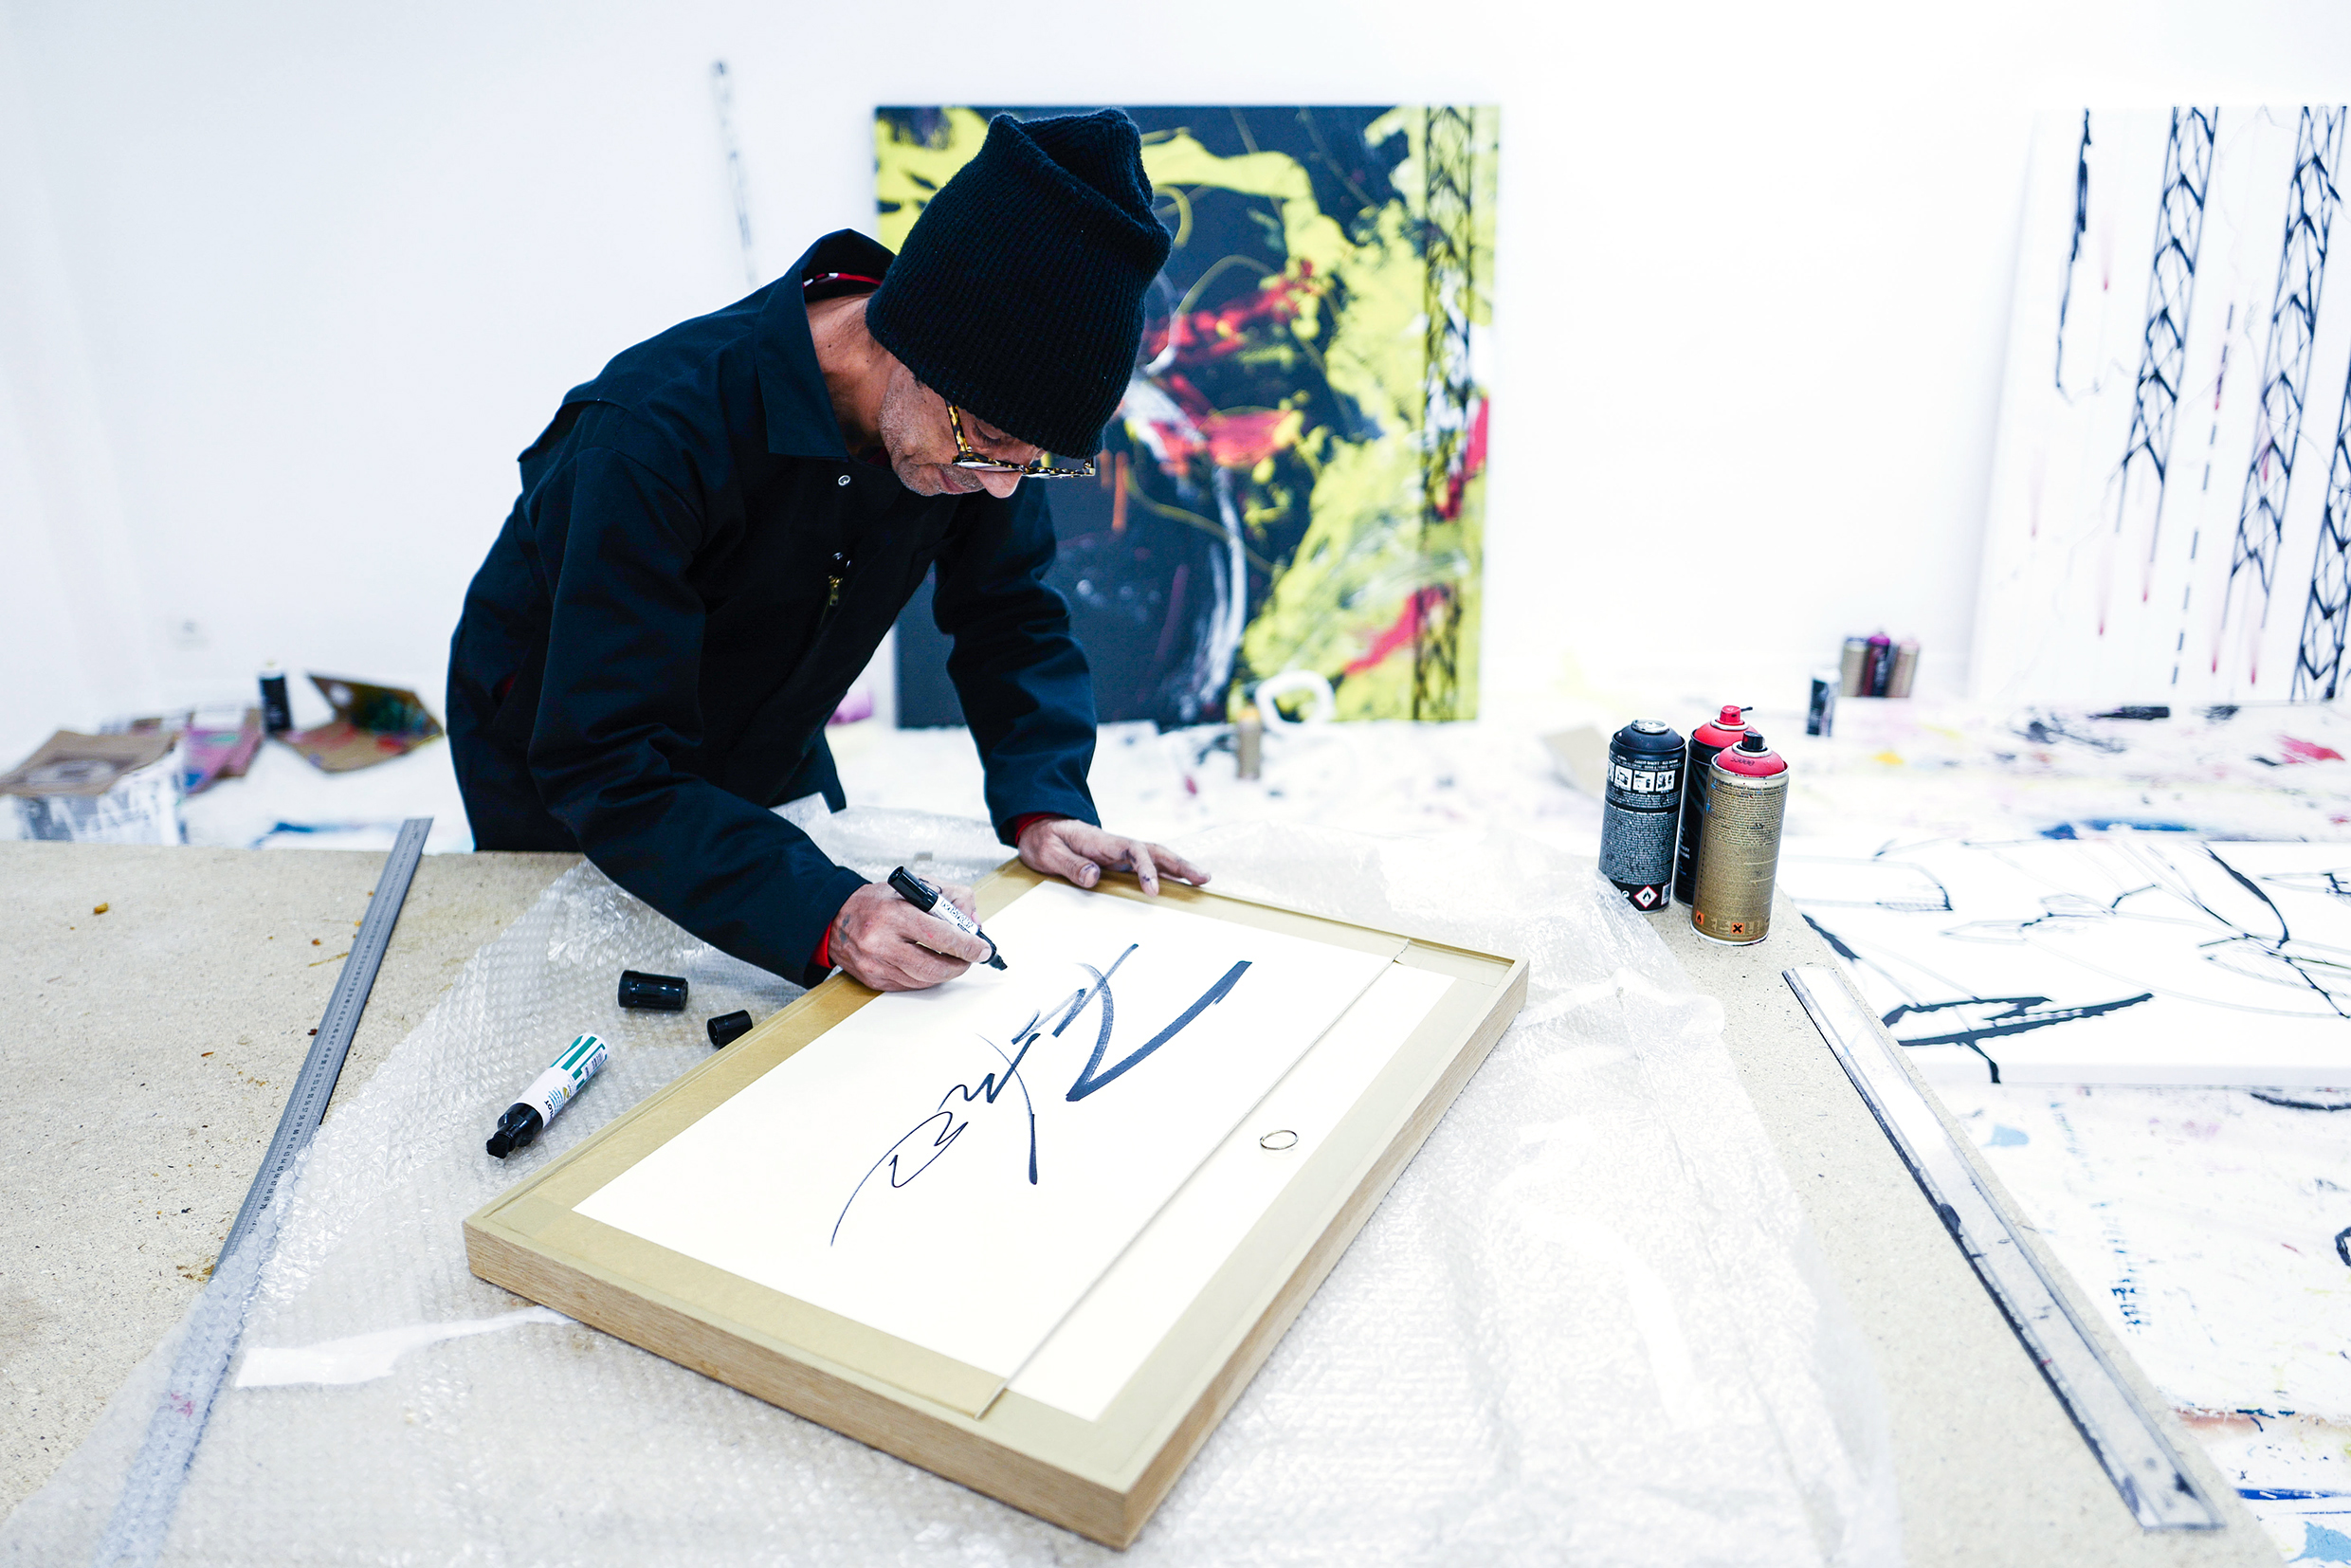 传奇涂鸦艺术家 Futura 将于香港举办《Abstract Compass》展览